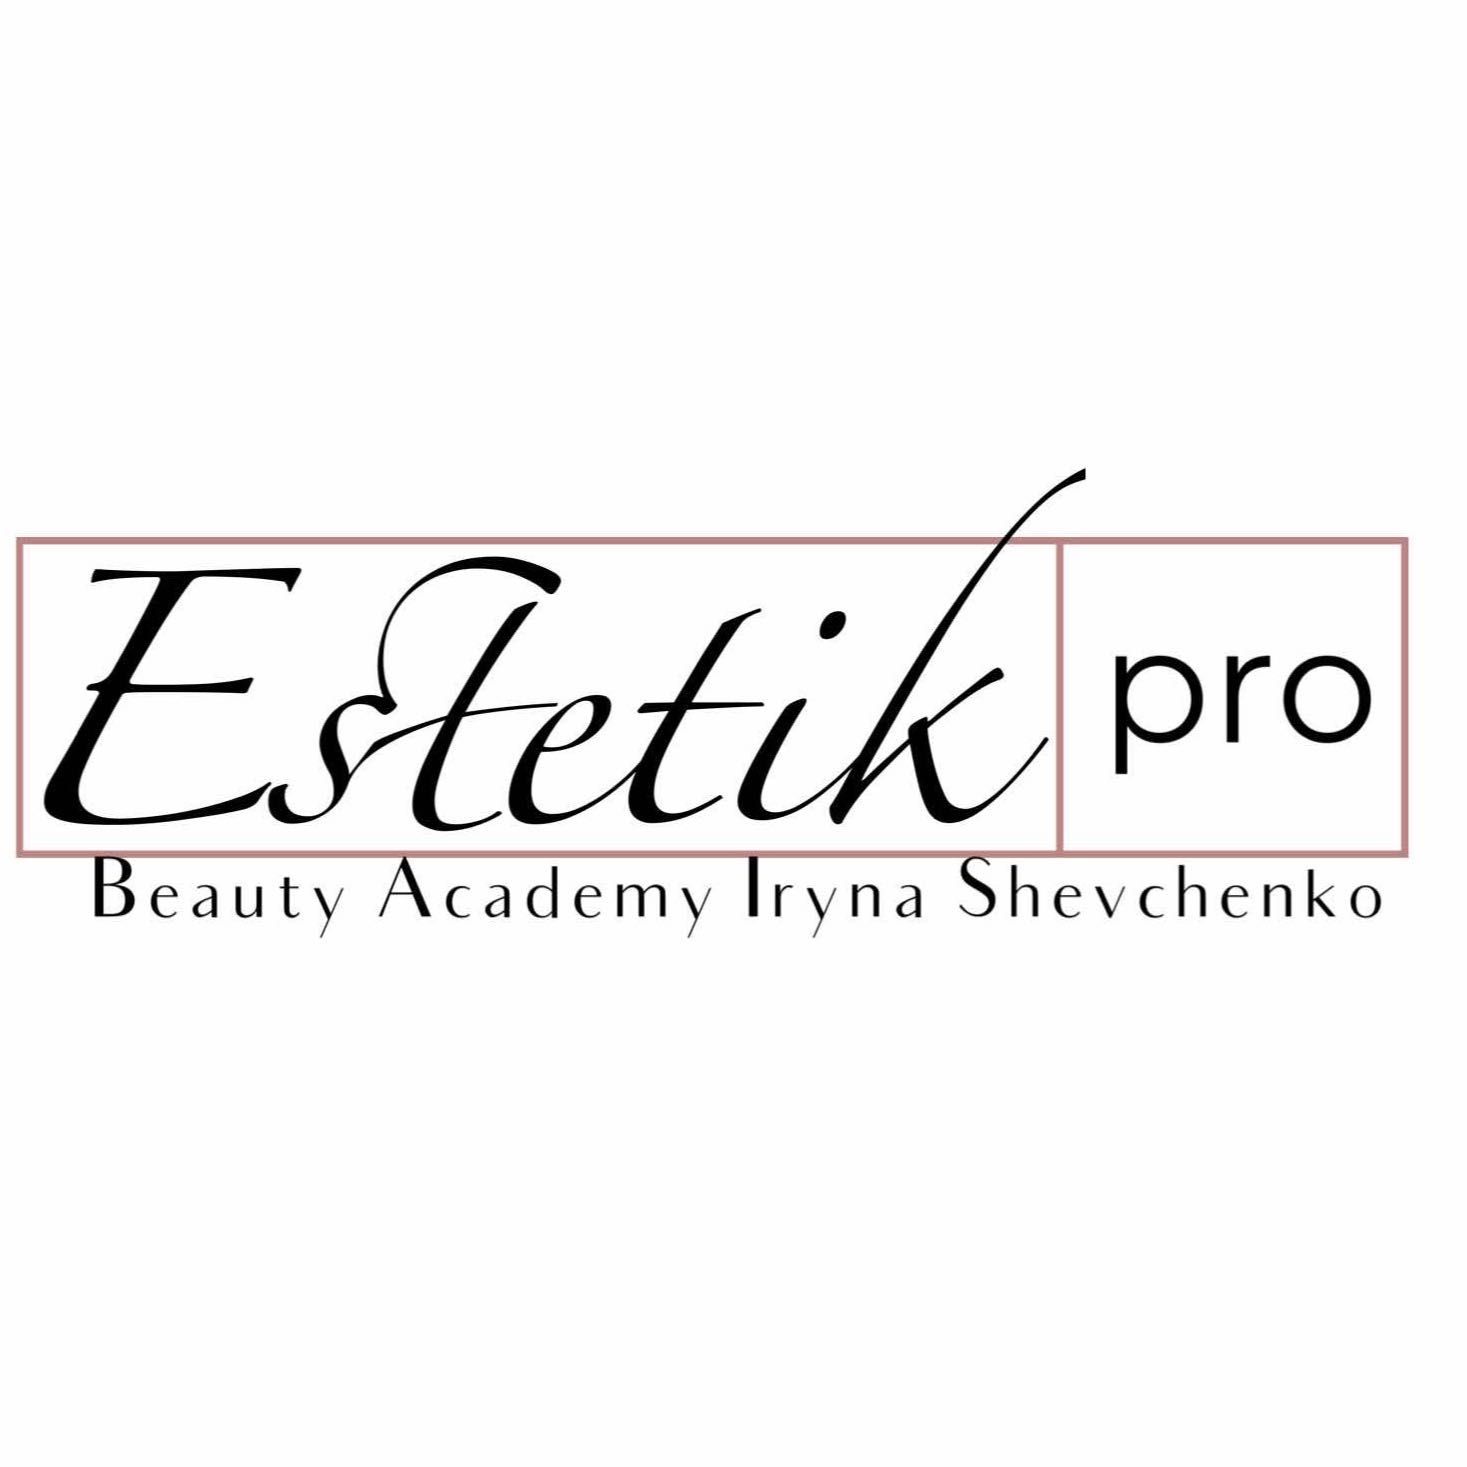 Estetik PRO  Beauty Academy, Włókiennicza 12, 90-211, Łódź, Śródmieście